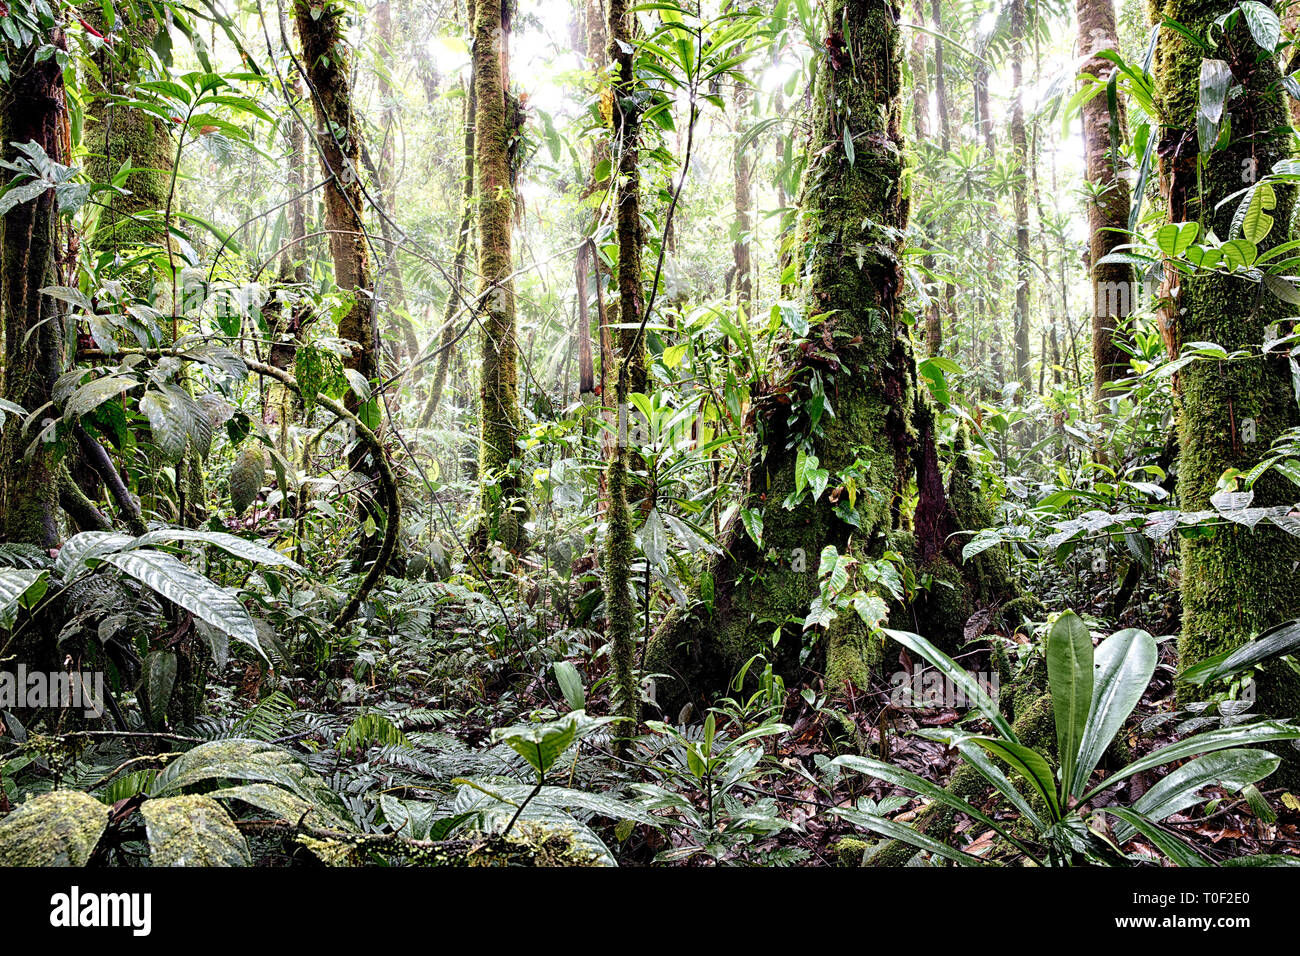 Tropischen Regenwald des Amazonas Kolumbien. Üppige reen Dschungel Vegetation mit riesigen Bäumen Reben Farn und Moos Stockfoto